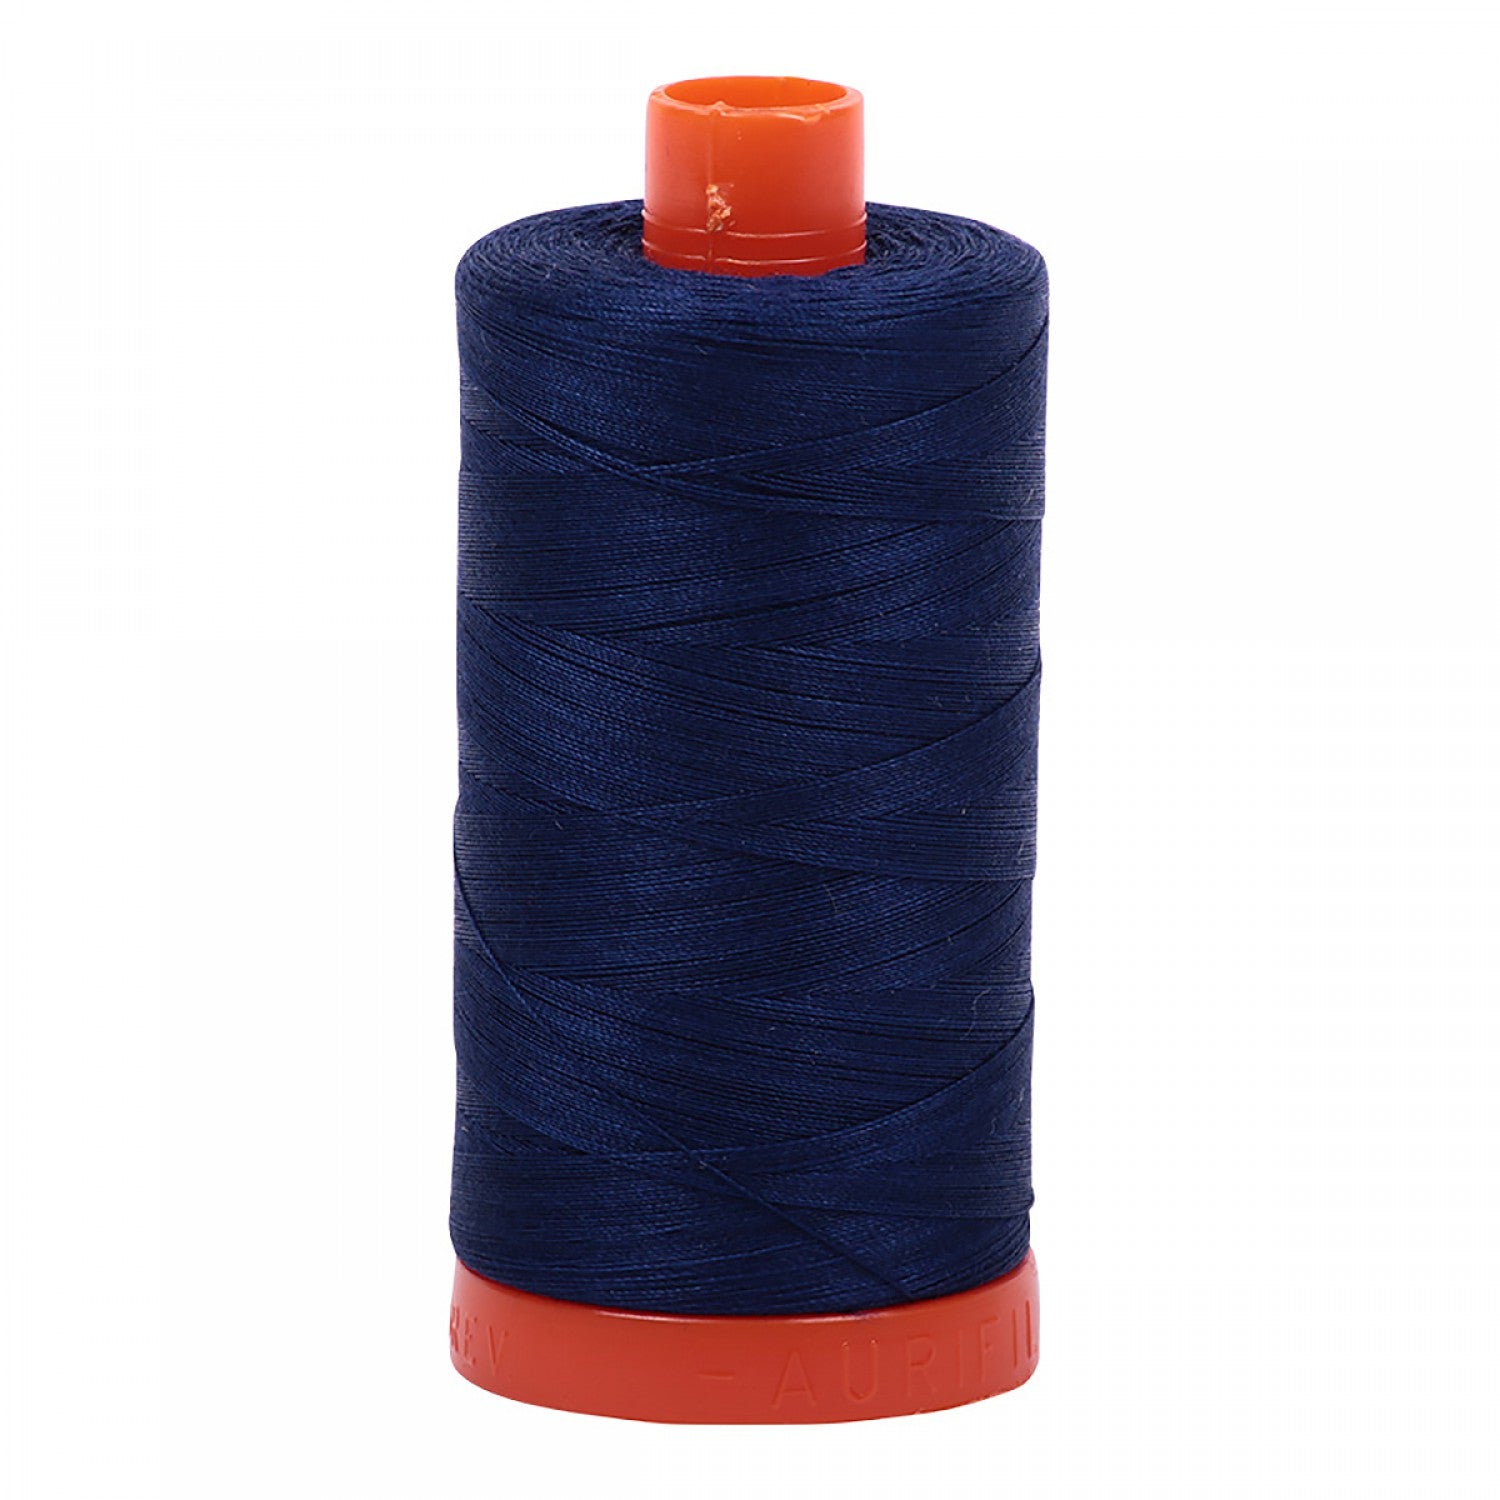 Aurifil Mako 50 wt Cotton Thread - 1422 yds - Dark Navy (2784)